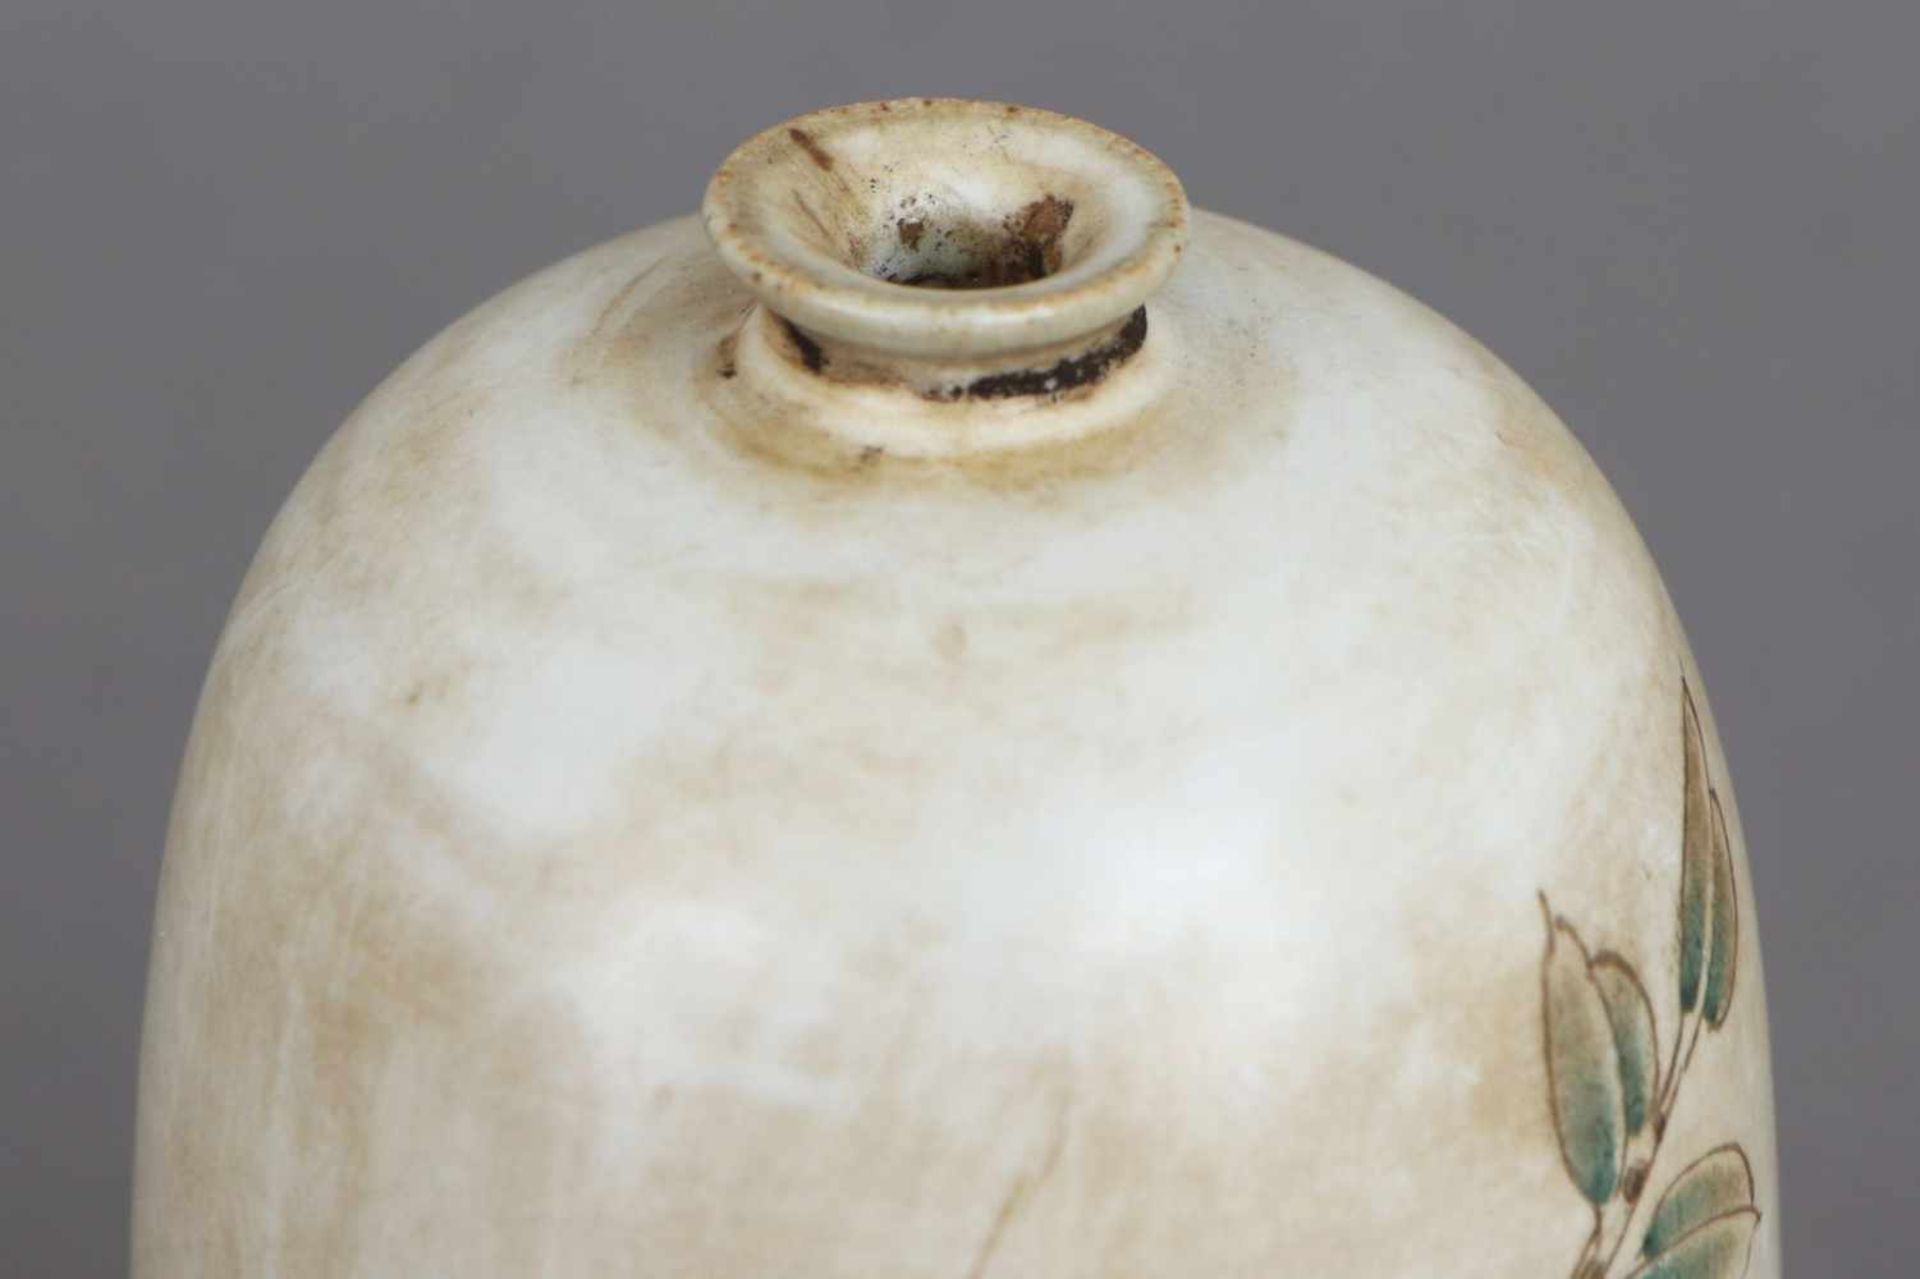 Asiatisches Medizin-/Ölfläschchen Feinsteinzeug, kegelförmiger Korpus mit eingezogenem, schmalem - Bild 6 aus 6